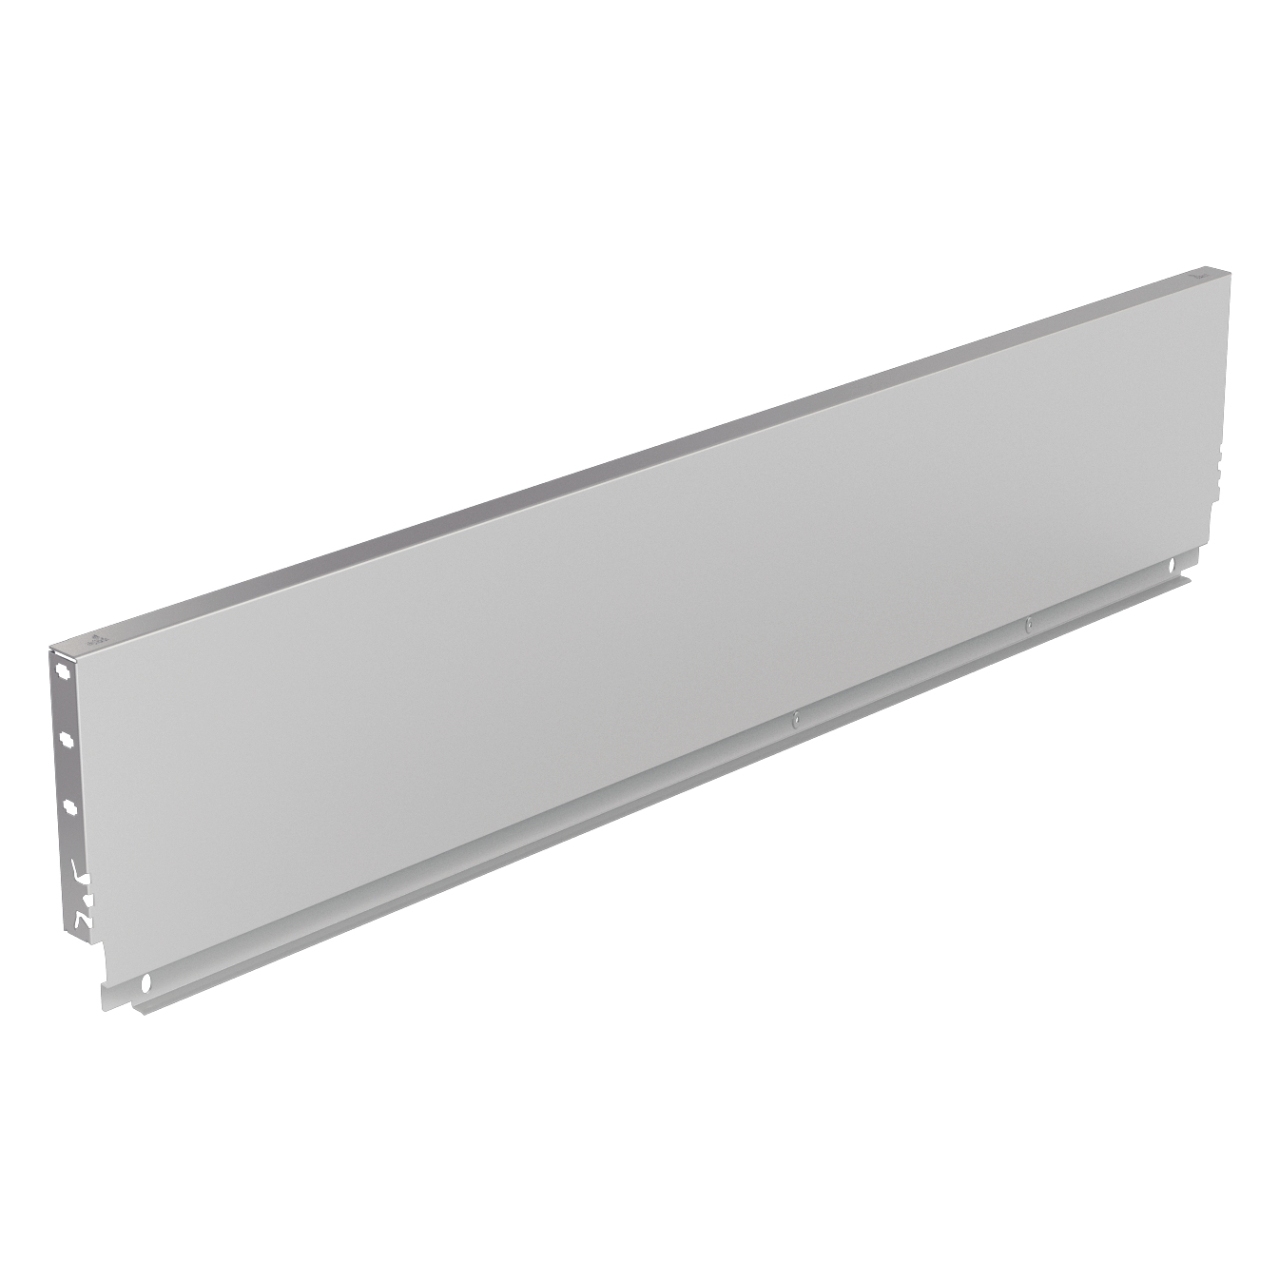 HETTICH Stahlrückwand ArciTech, 250 x 550 mm, weiß, 9121698